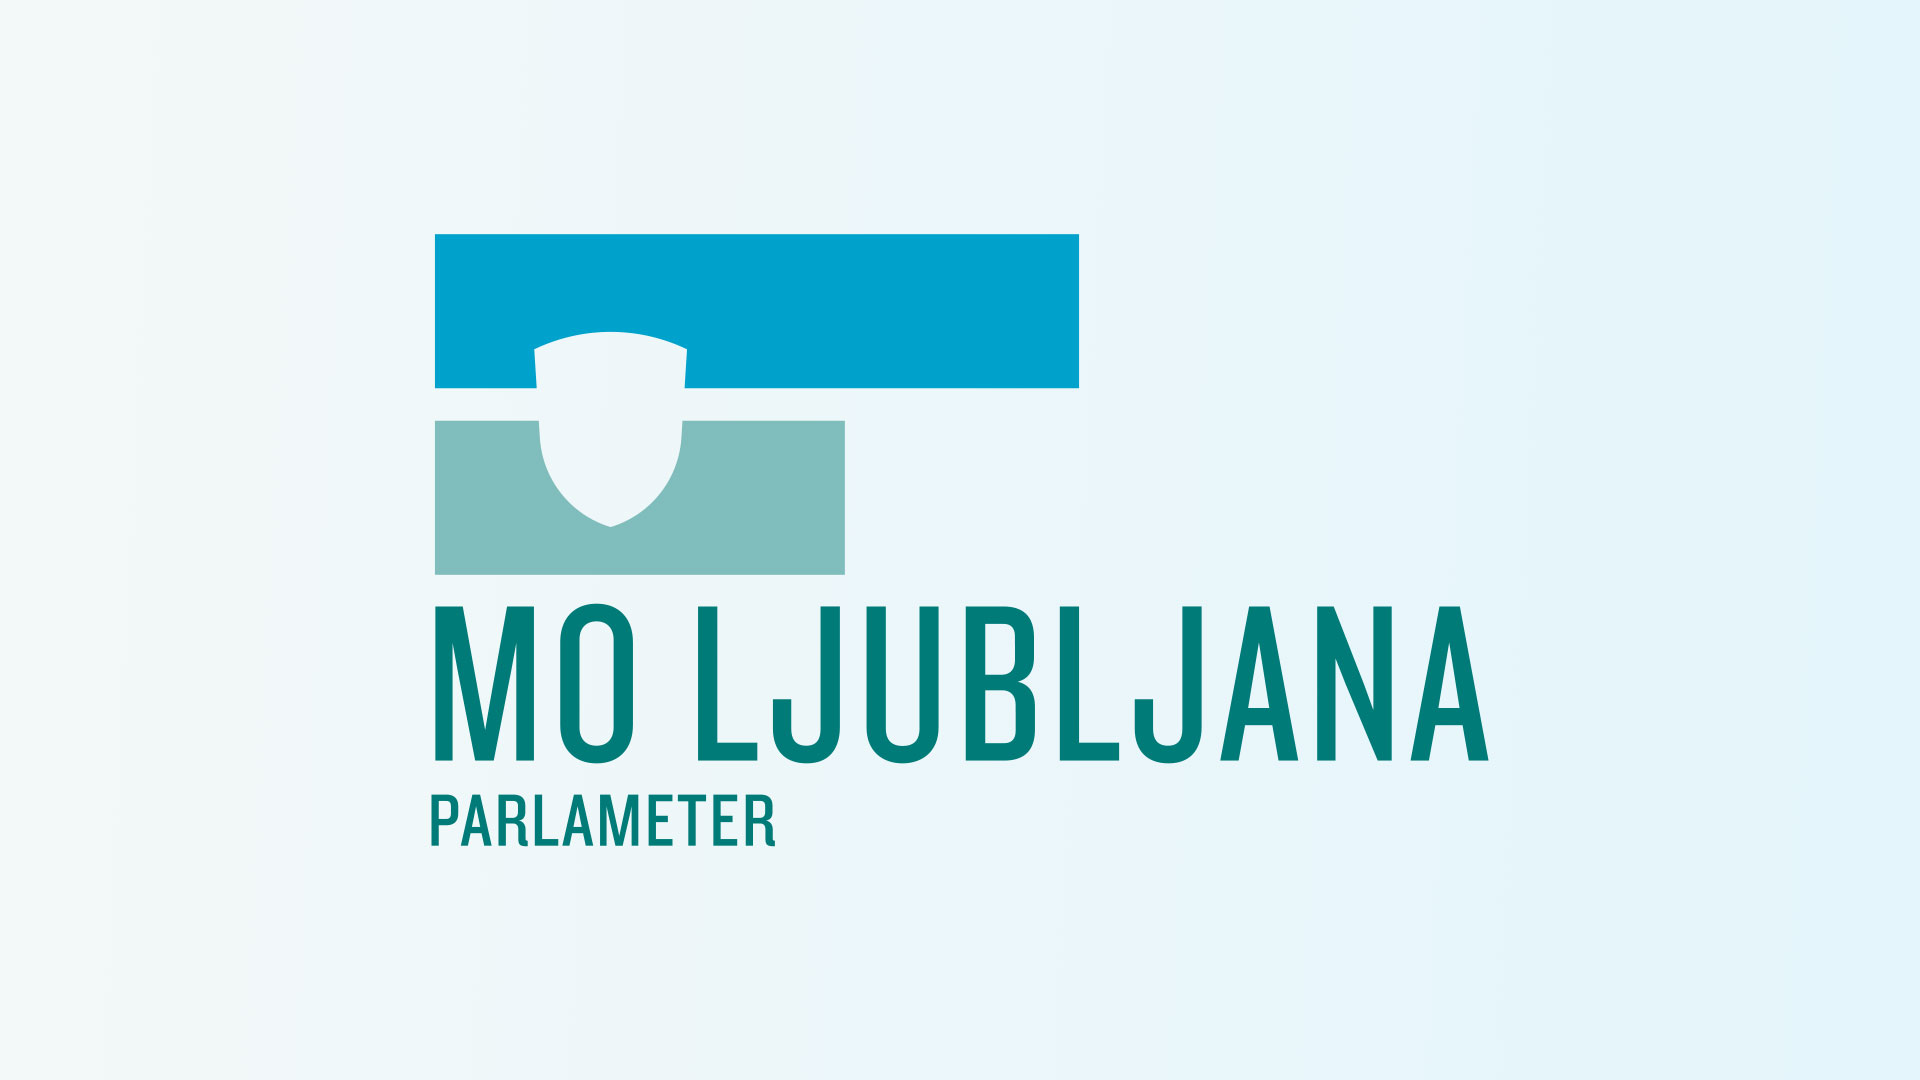 Parlameter Ljubljana